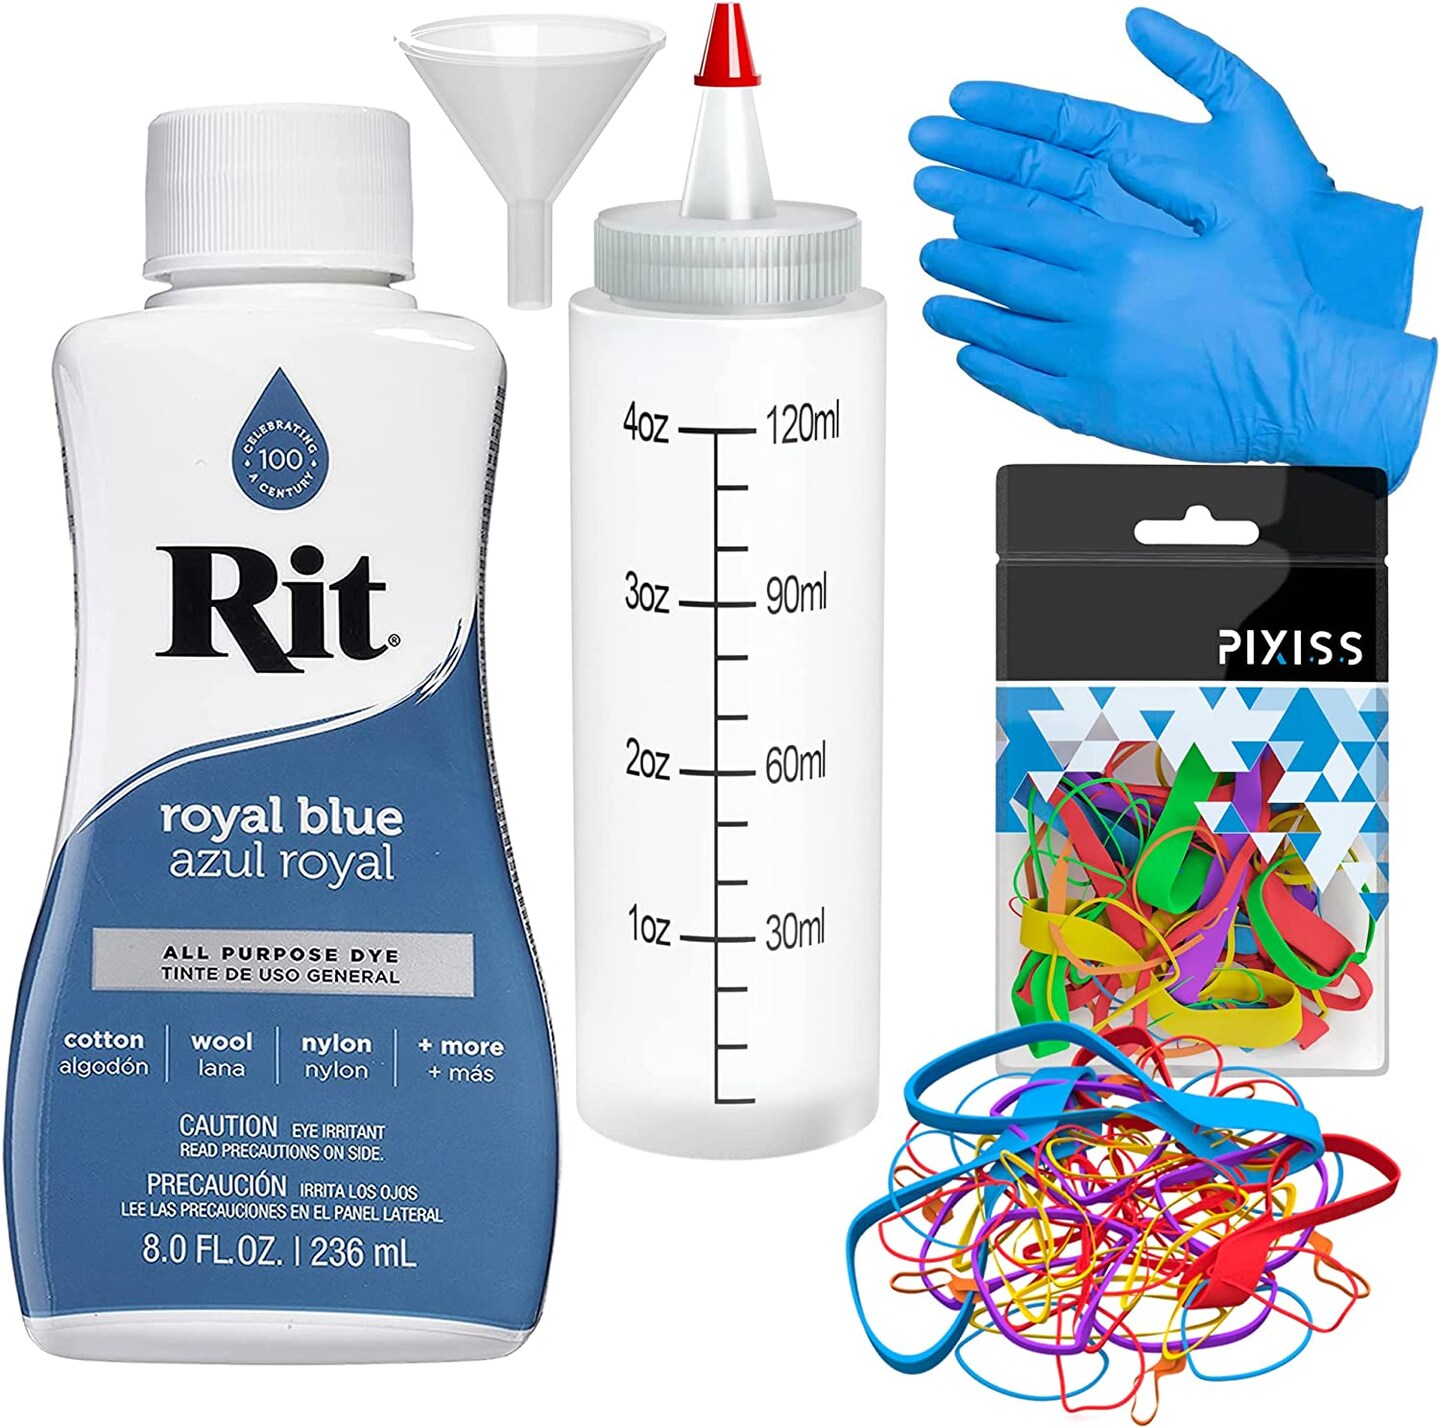 Rit Dye Liquid Royal Blue All-Purpose Dye 8oz, Pixiss Tie Dye Accessories Bundle